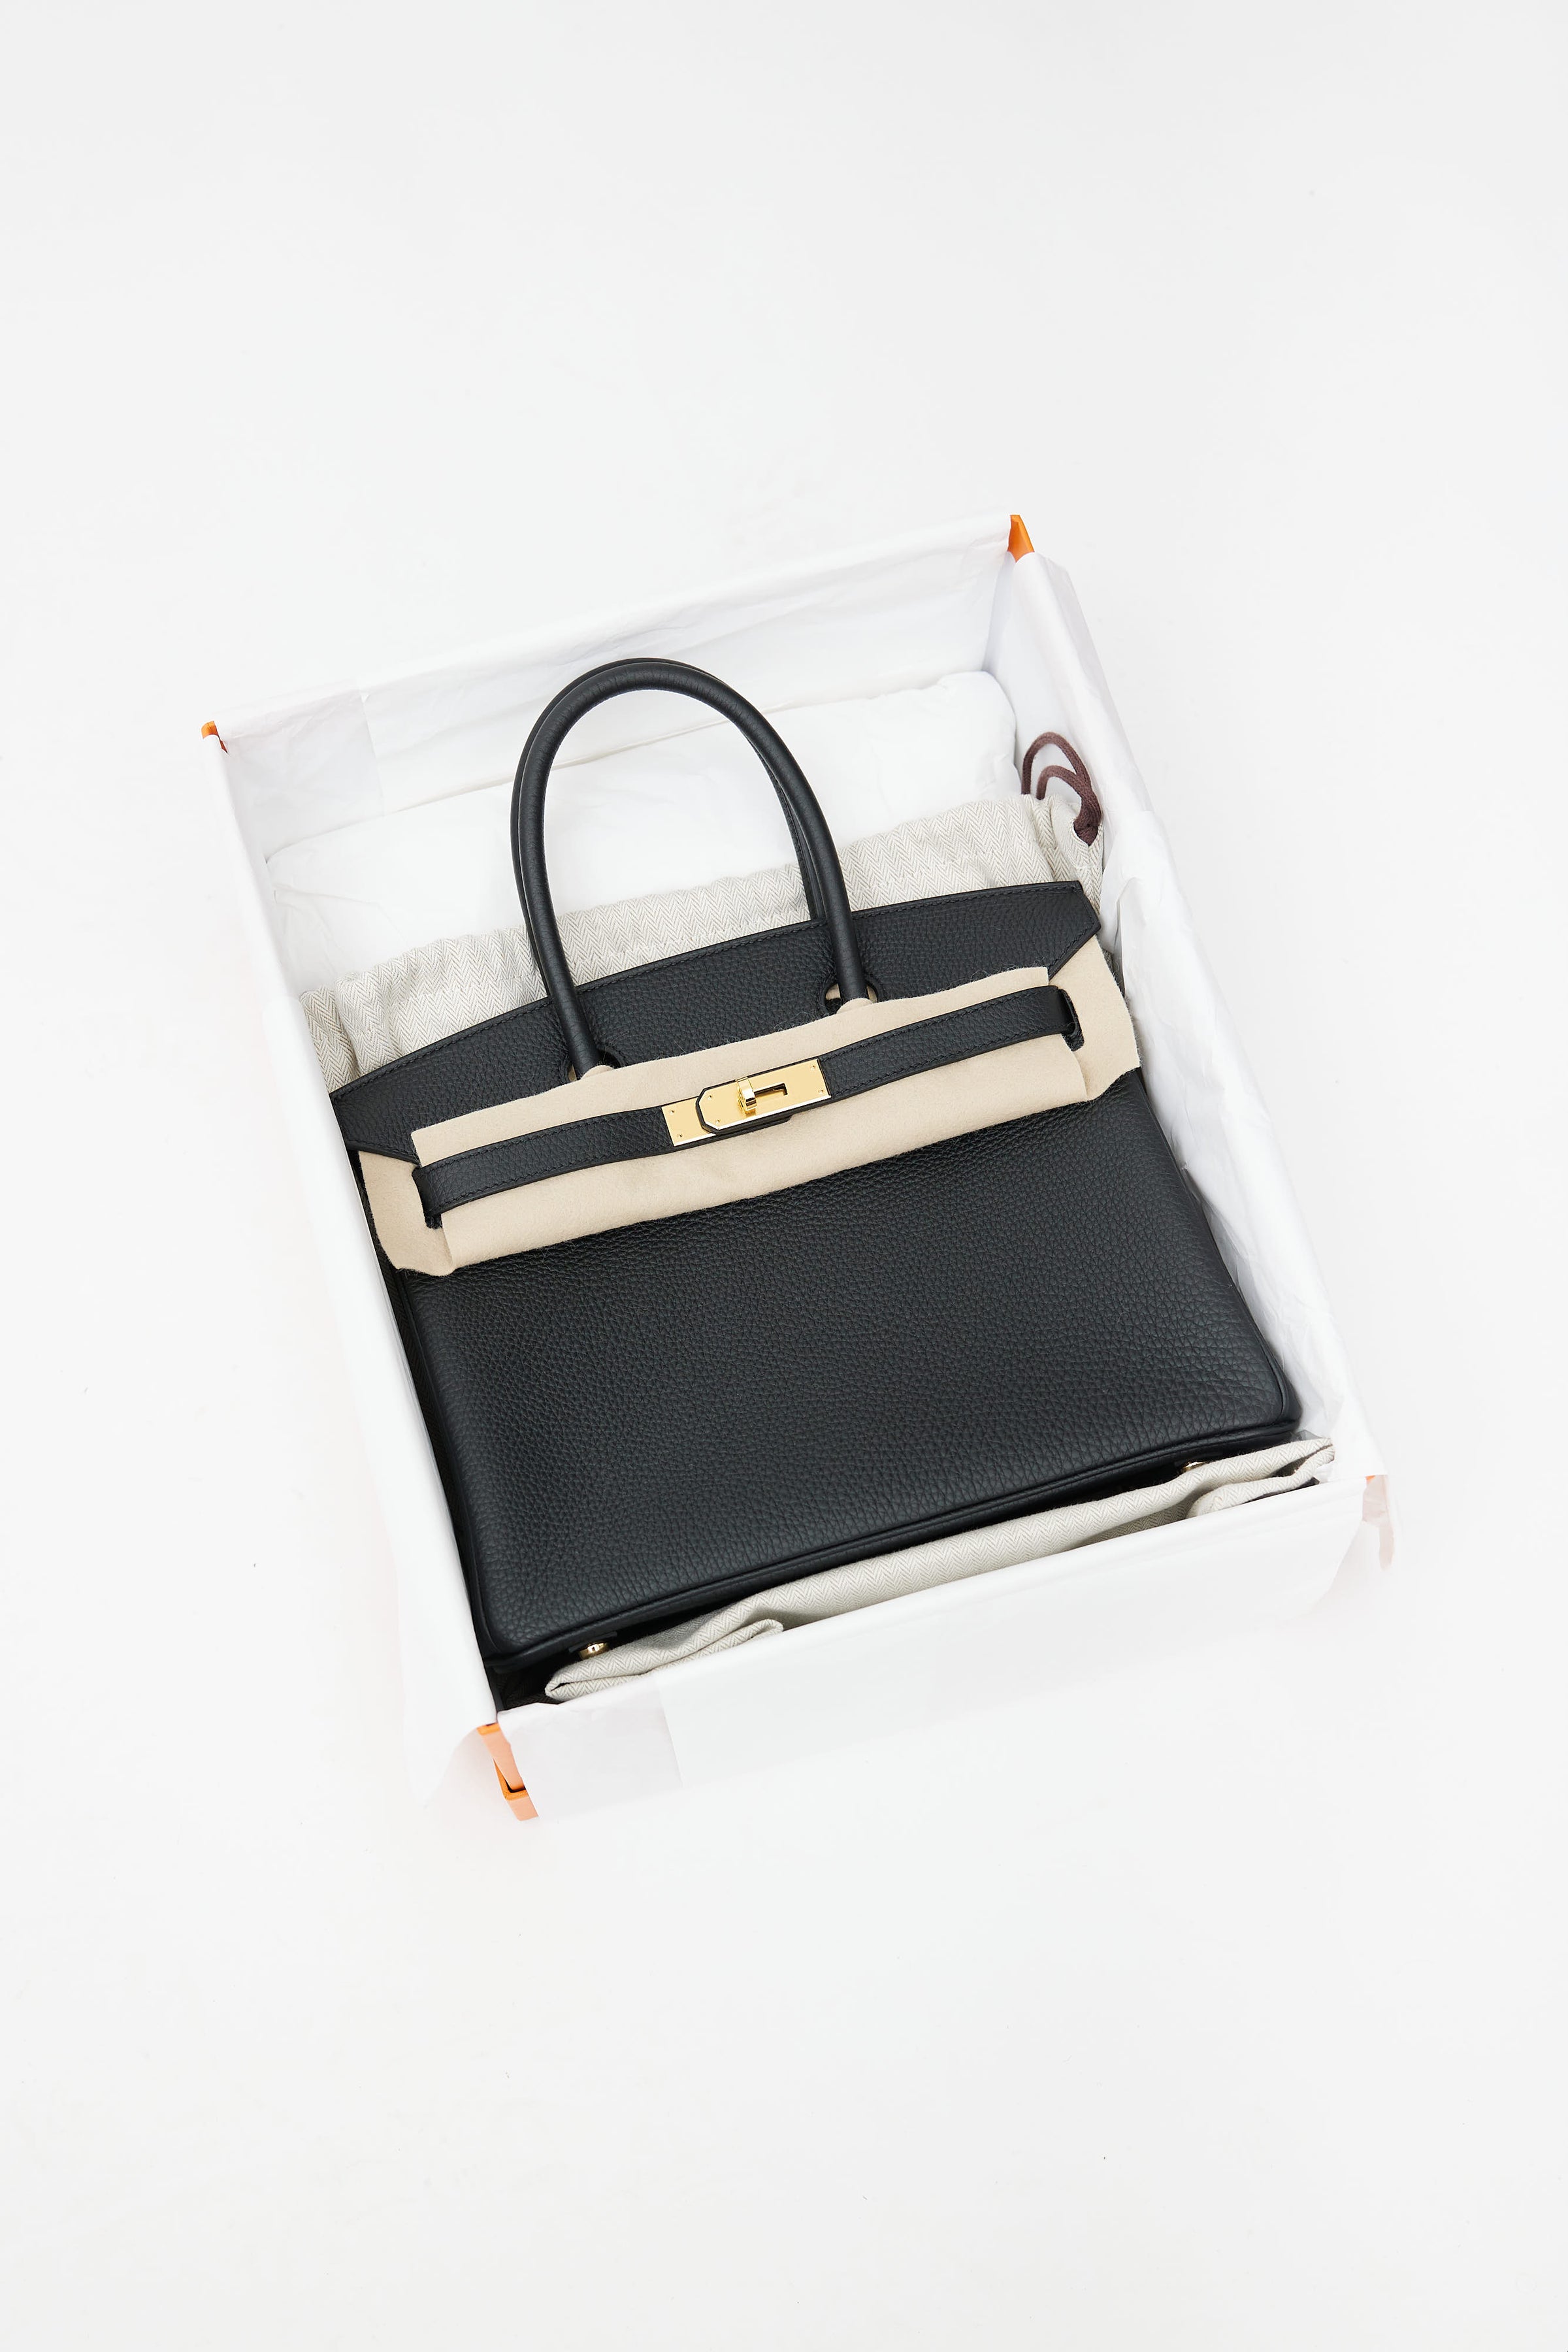 Hermes Birkin 30 Bag Black Togo Leather with Gold Hardware